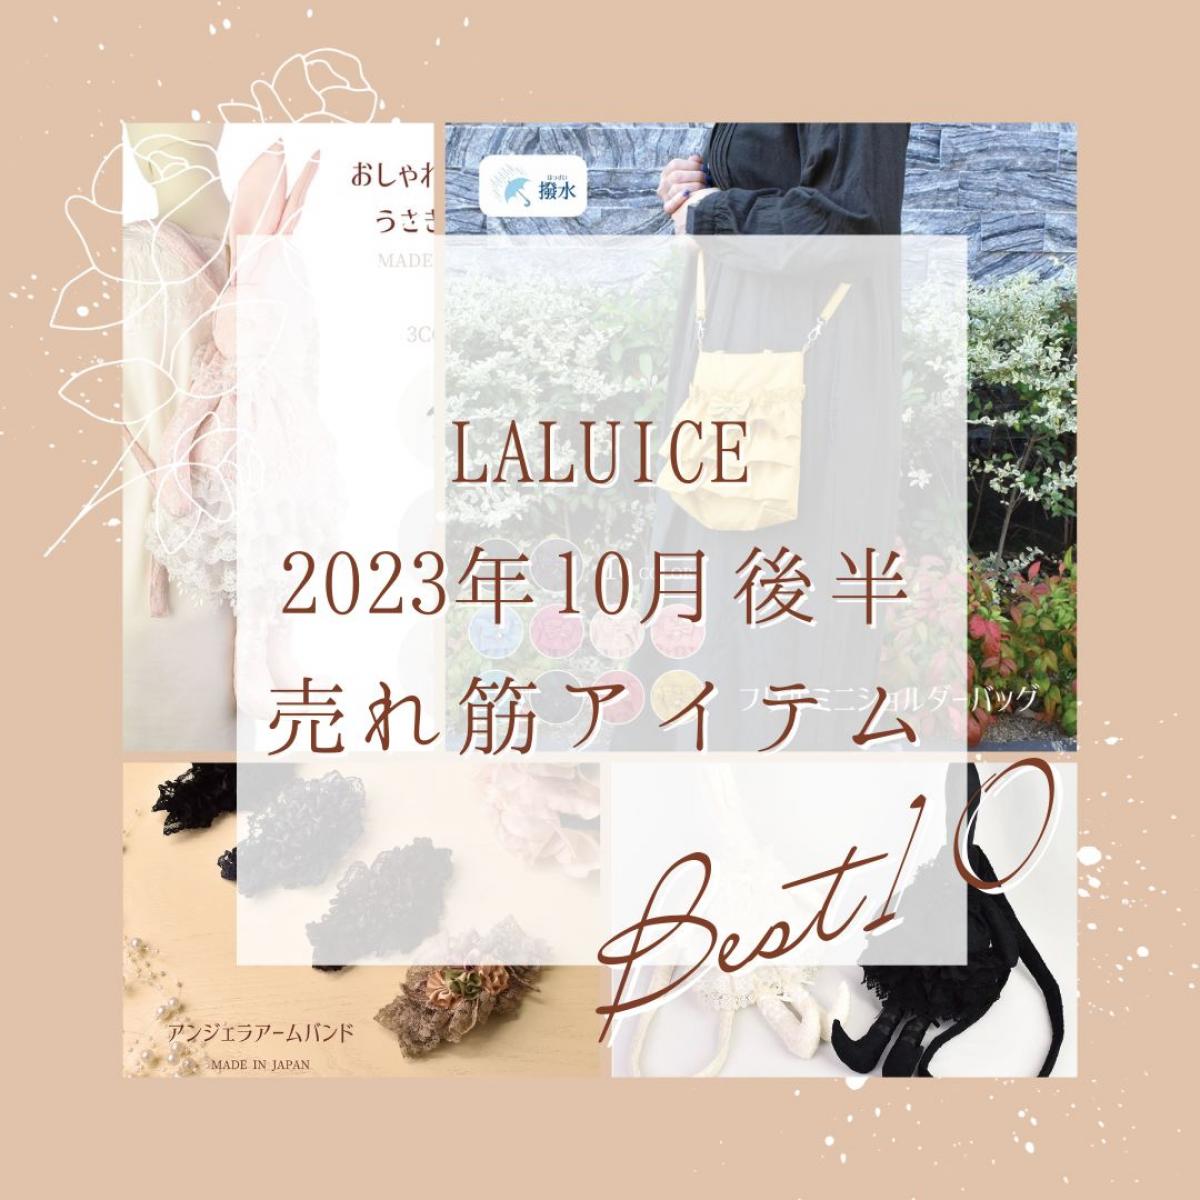 2023年10月後半(10/16～10/31)LALUICEネットショップ売れ筋アイテム BEST10